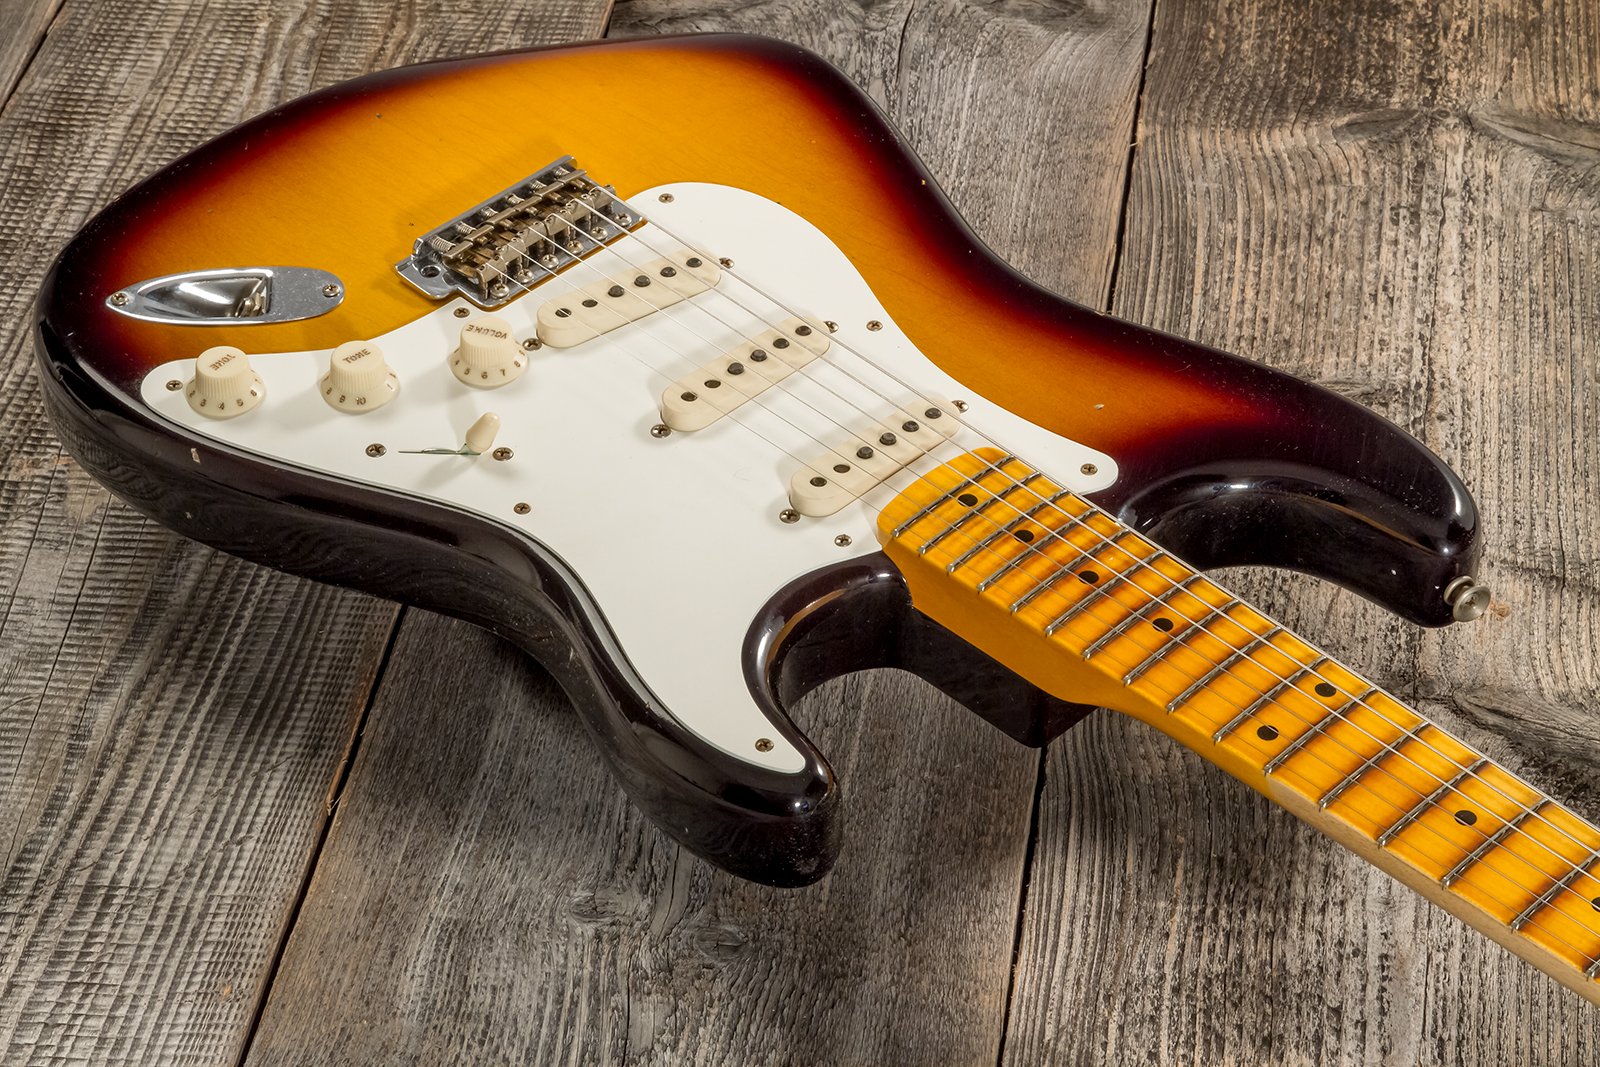 Fender Custom Shop Strat 1956 3s Trem Mn #cz570281 - Journeyman Relic Aged 2-color Sunburst - Str shape electric guitar - Variation 2